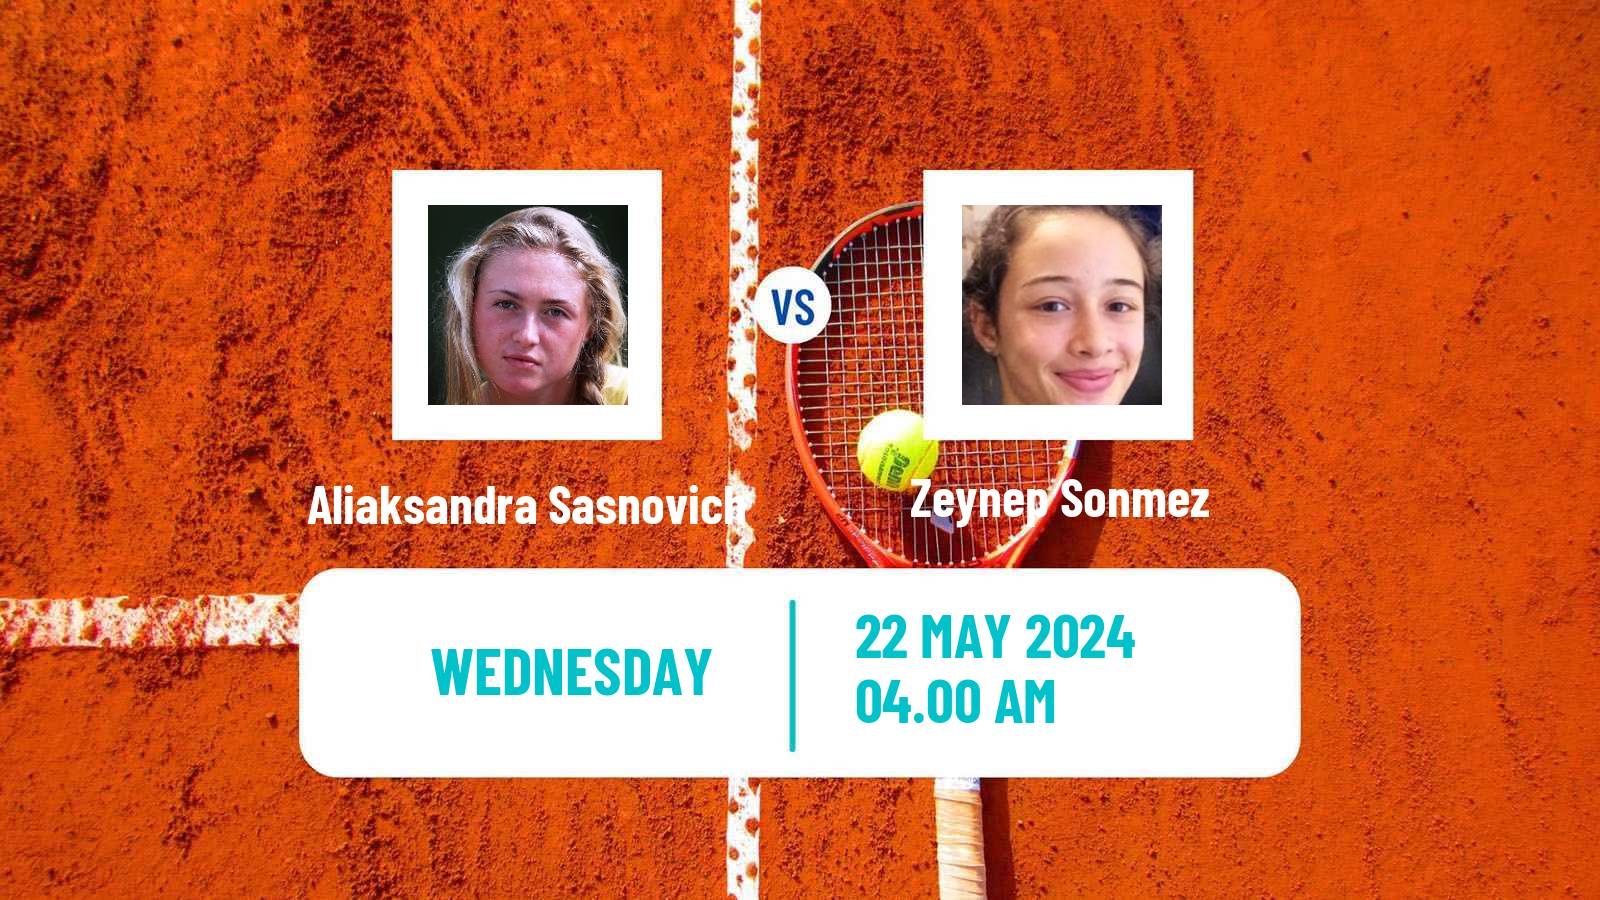 Tennis WTA Roland Garros Aliaksandra Sasnovich - Zeynep Sonmez